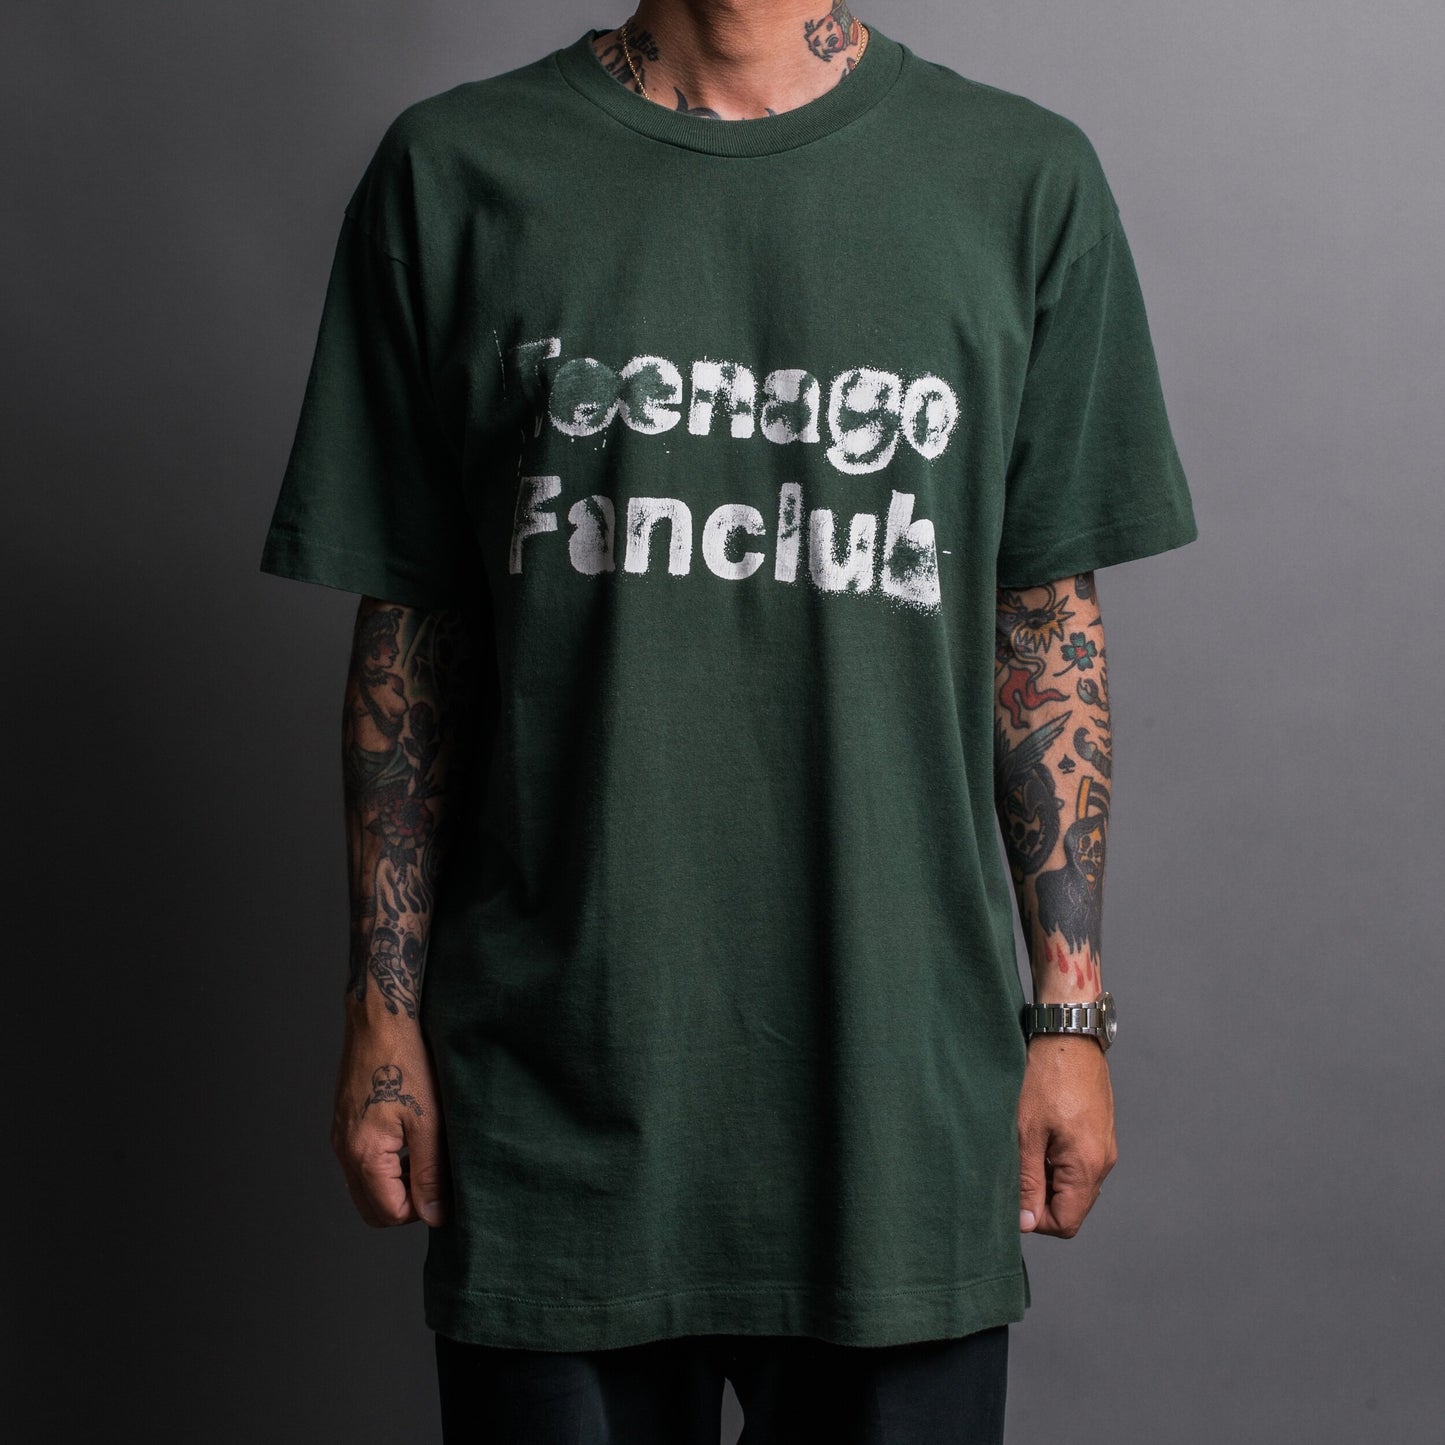 Vintage 90’s Teenage Fanclub T-Shirt